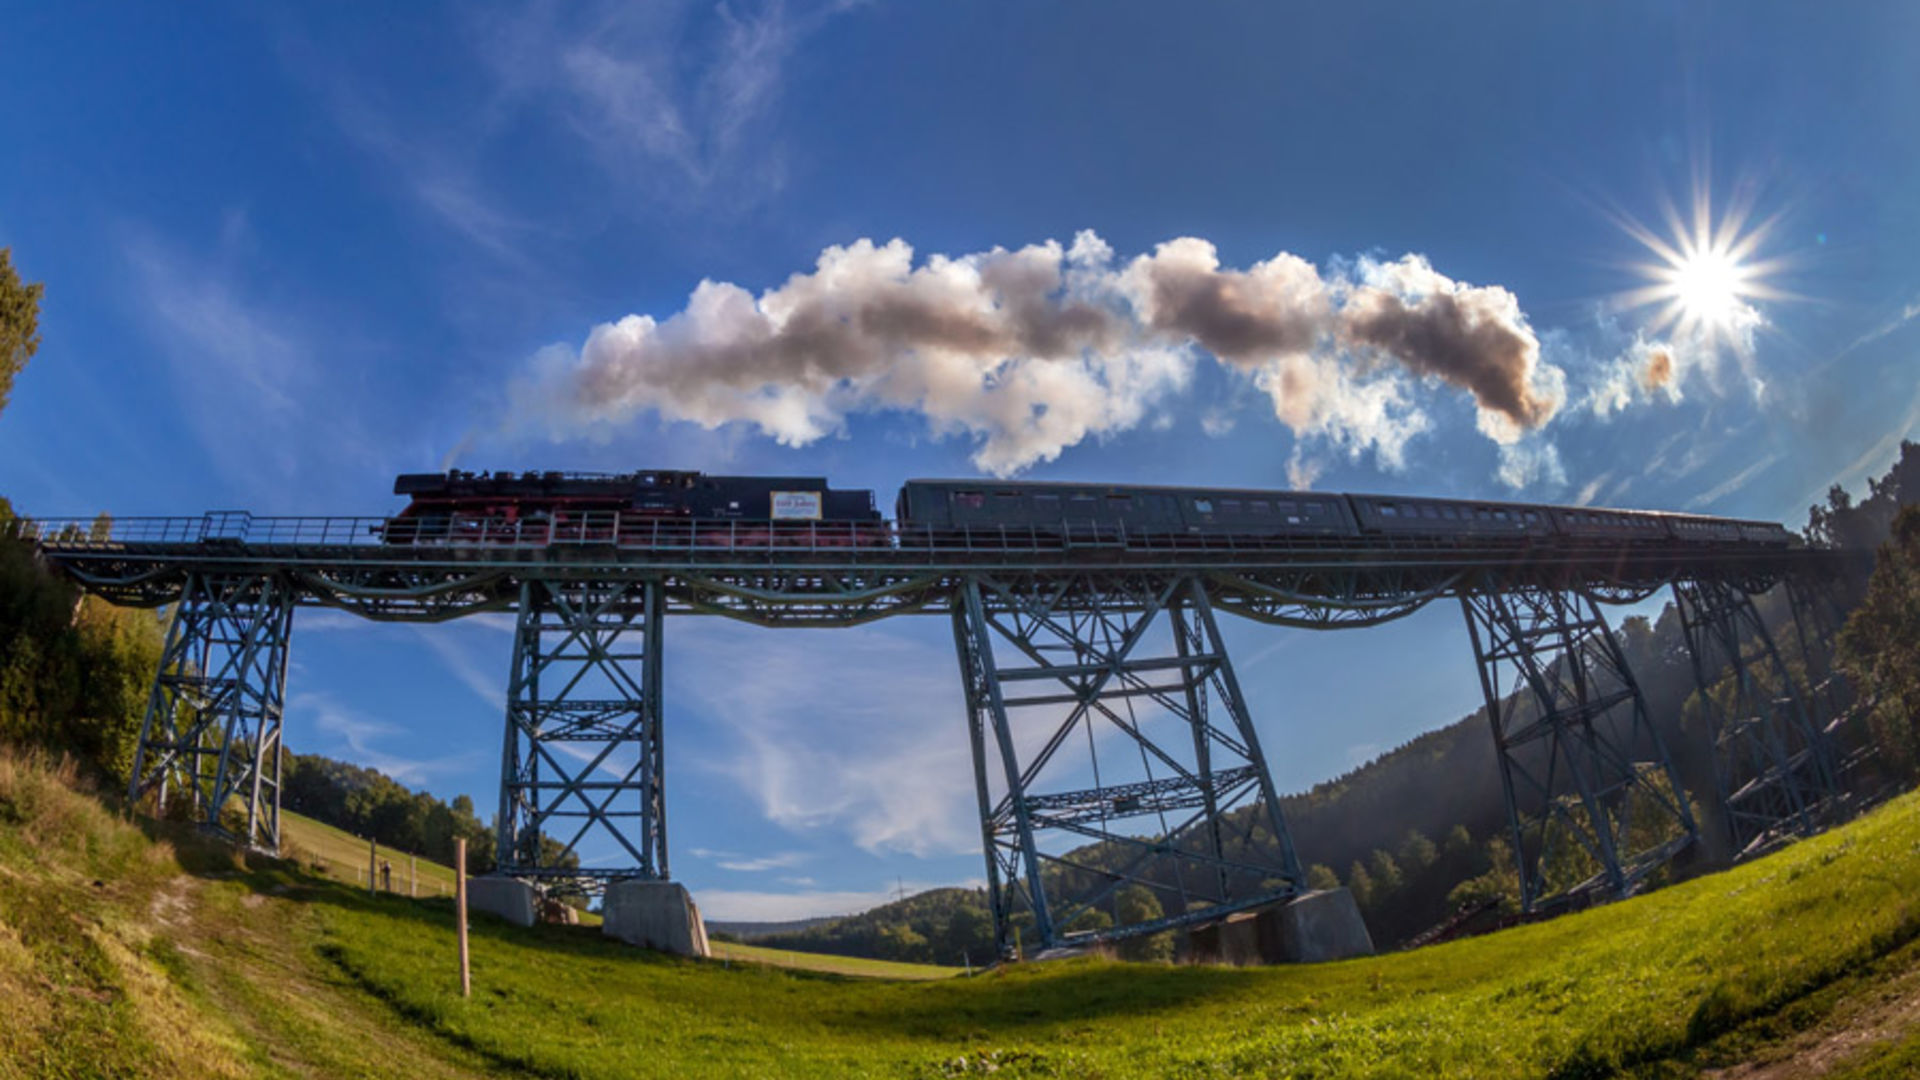 Markersbacher Viadukt an der Erzgebirgischen Aussichtsbahn 
© TVE Uwe Meinhold